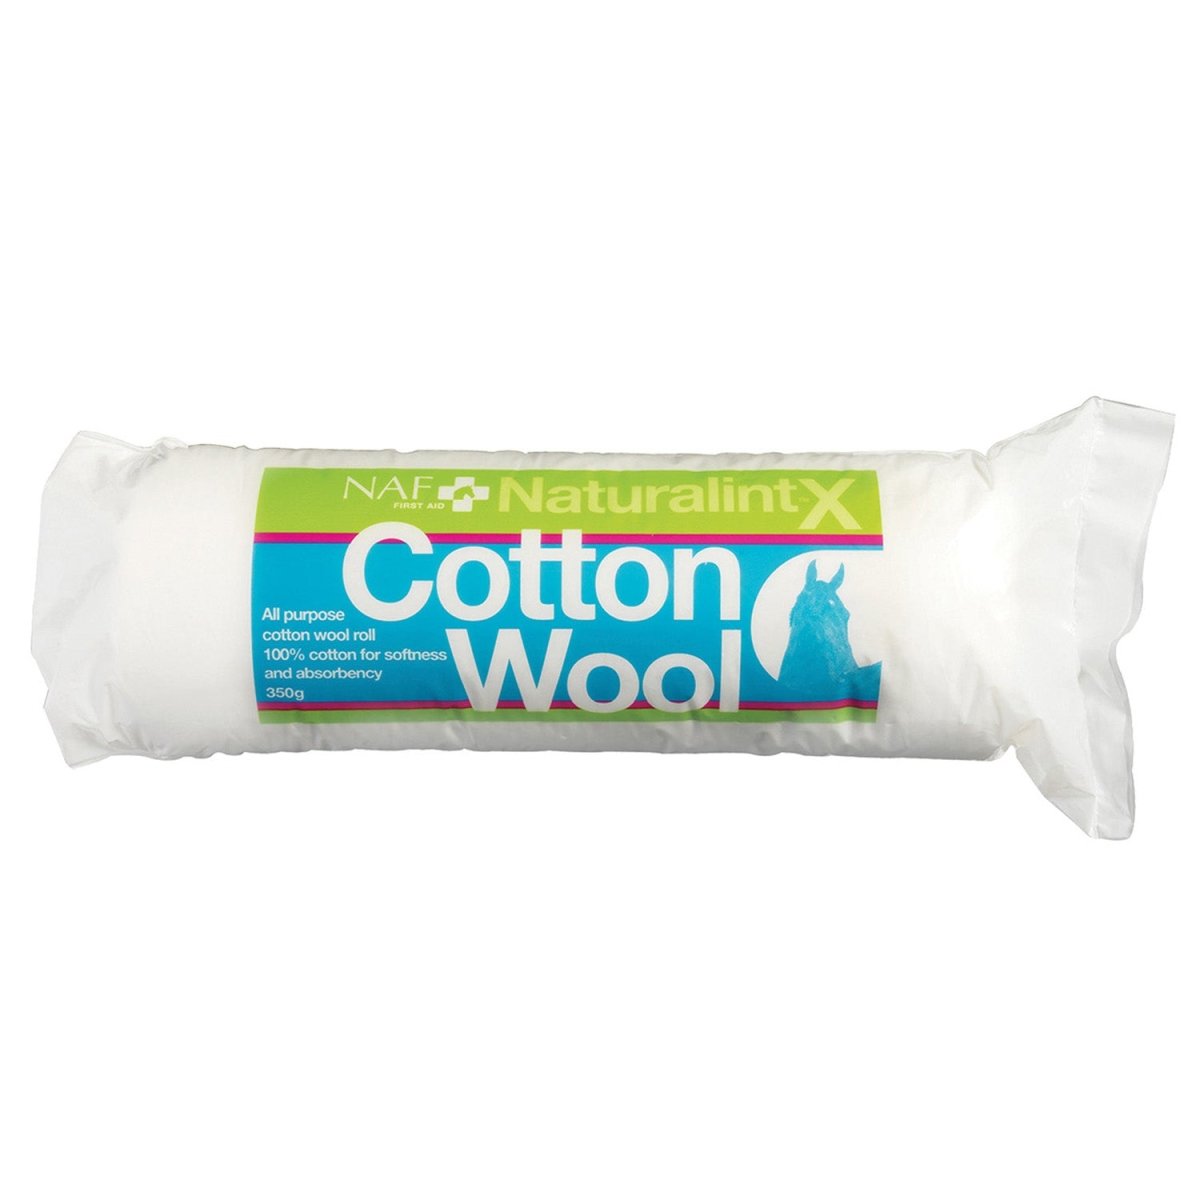 Naf Naturalintx Cotton Wool - 350Gm -